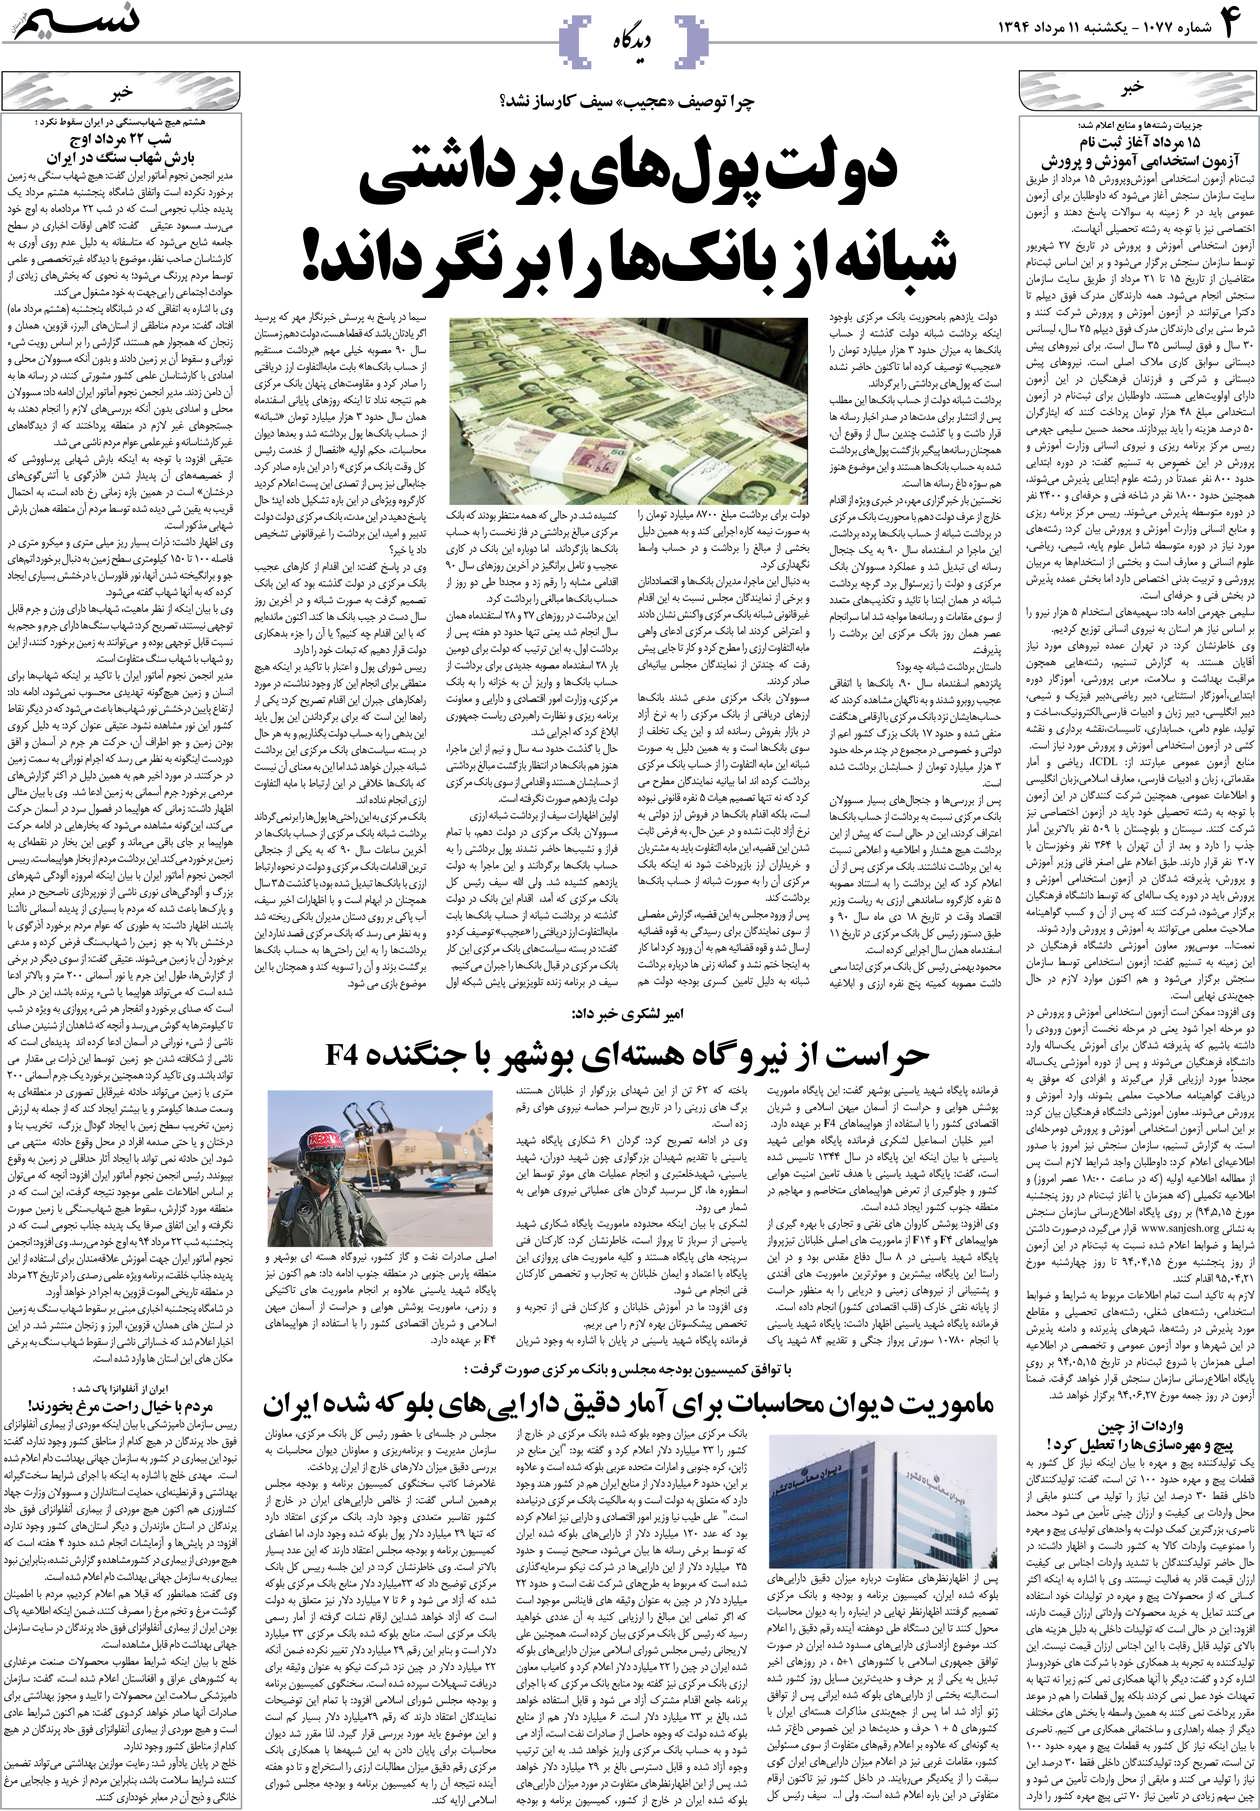 صفحه دیدگاه روزنامه نسیم شماره 1077